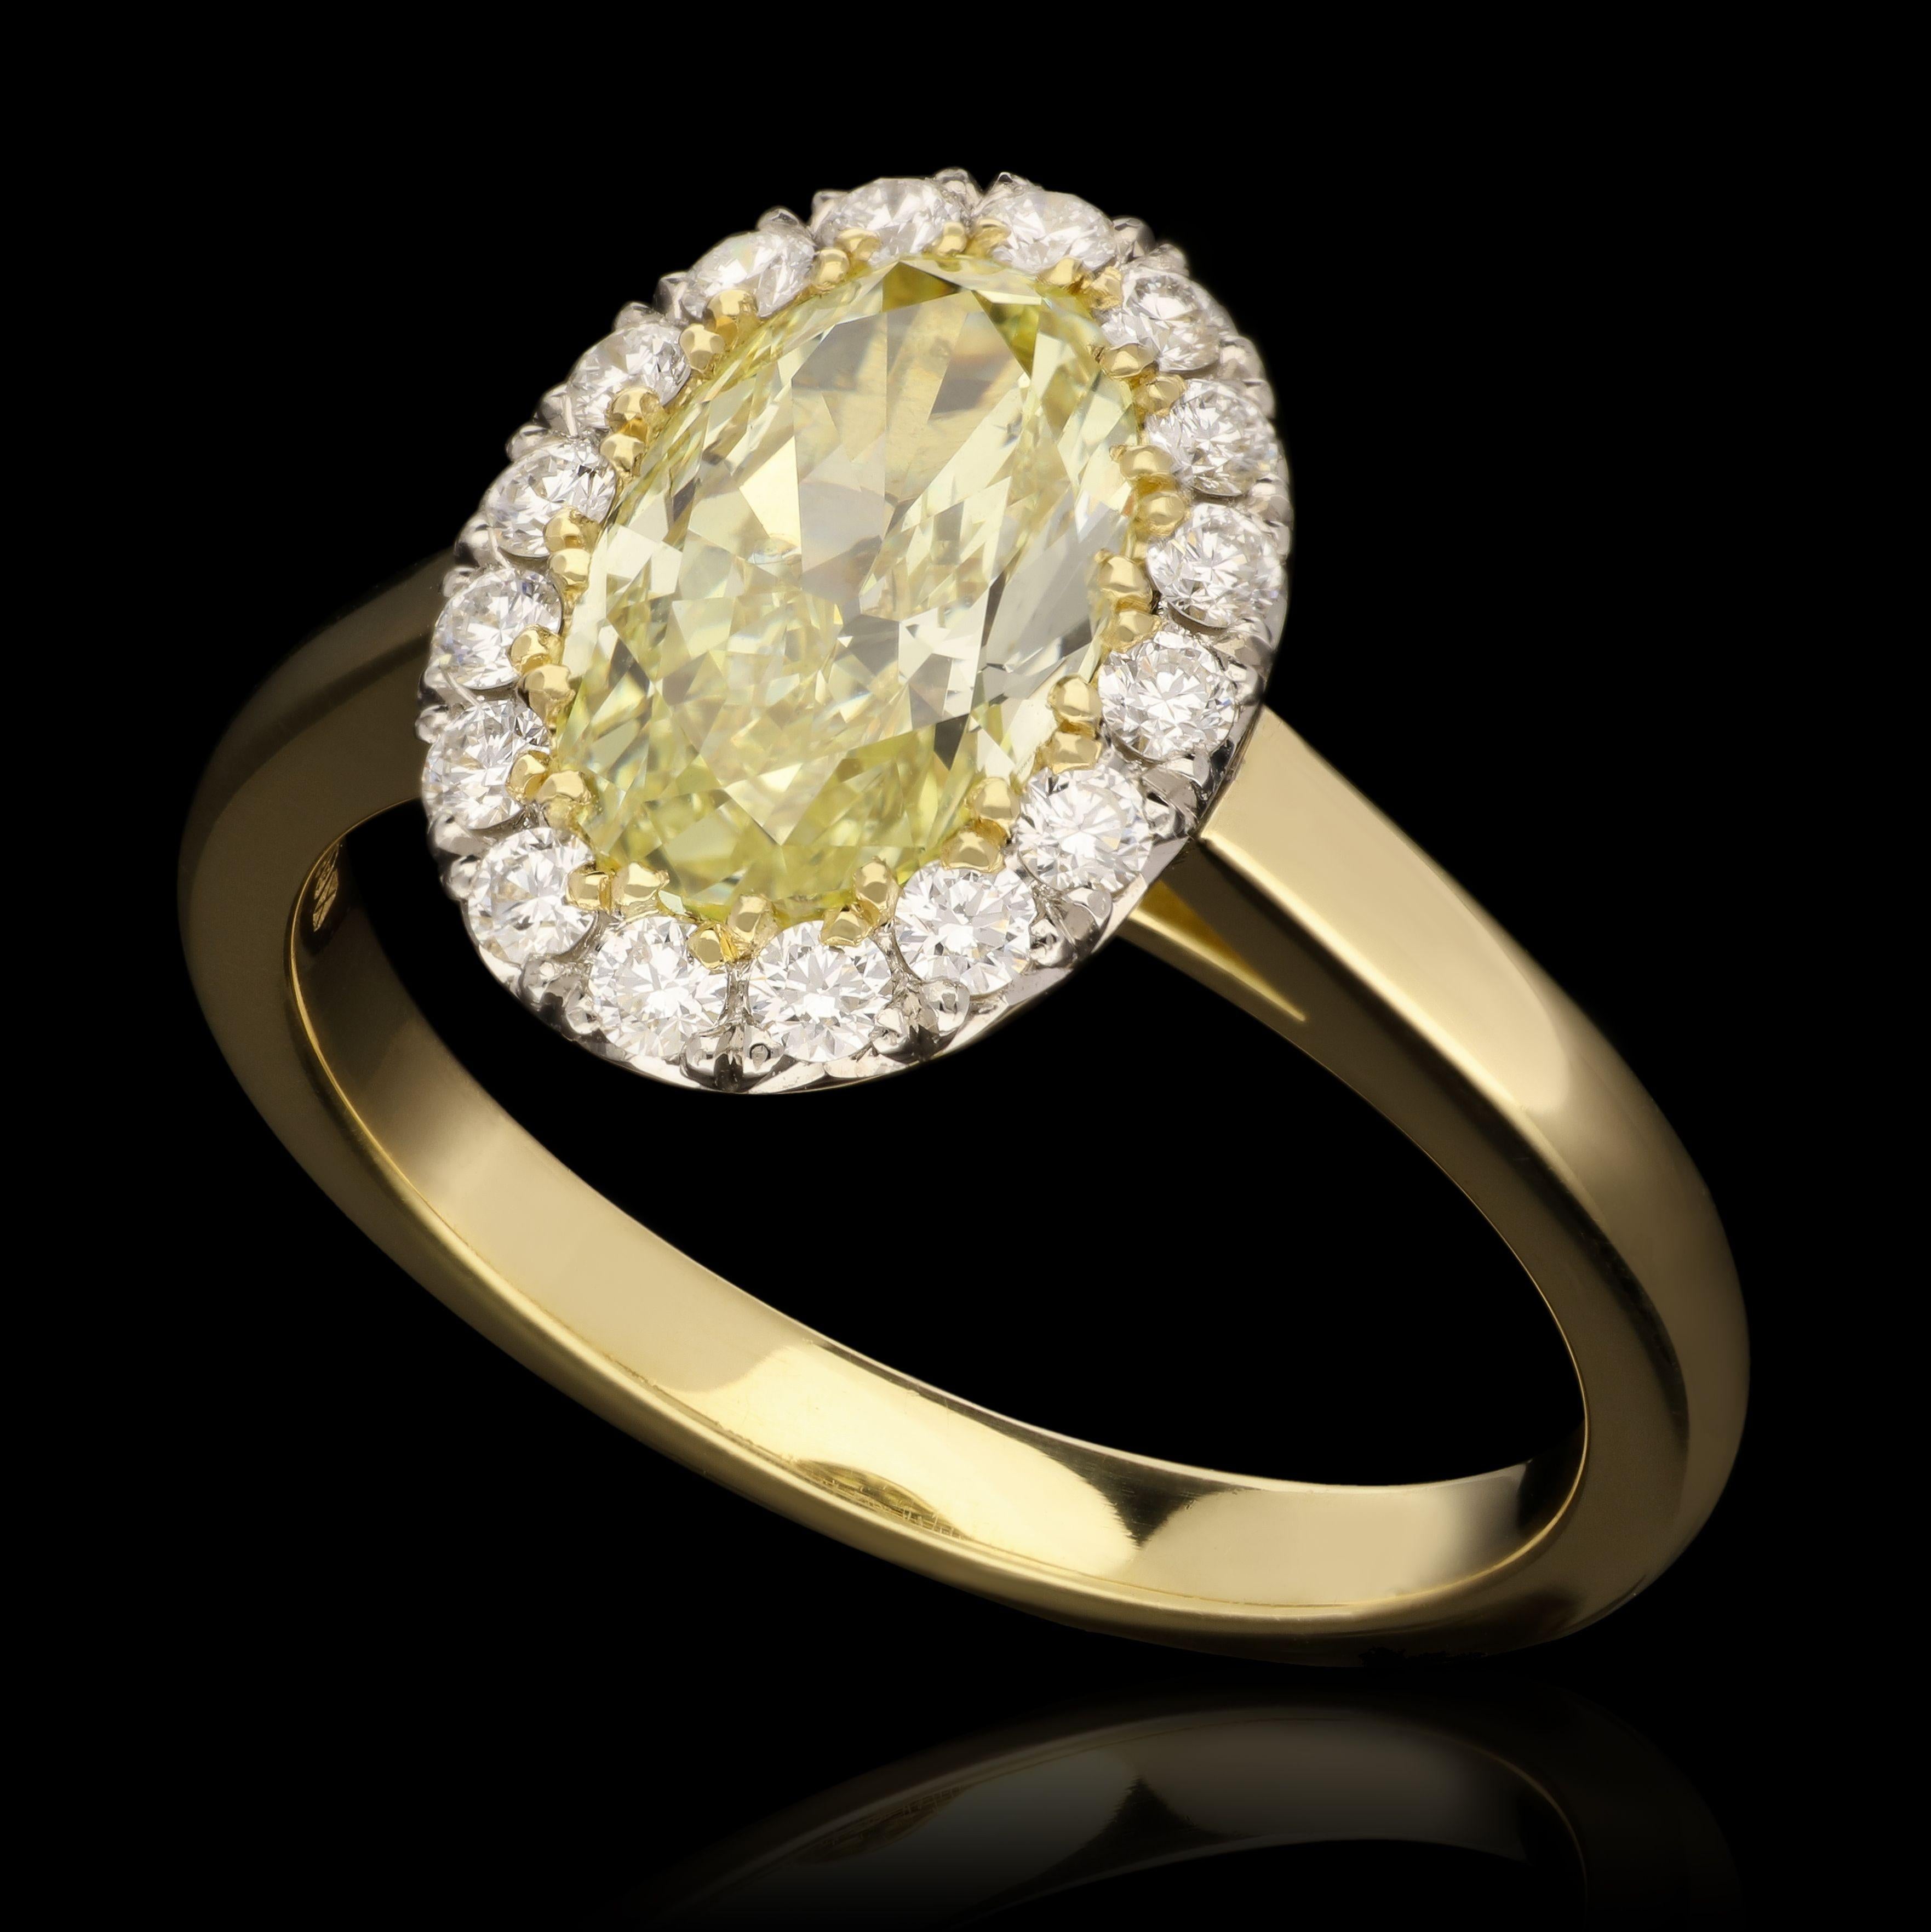 Bague à grappe classique en diamant jaune ovale de Hancocks, centrée d'un magnifique diamant ovale brillant pesant 1,54 ct, de couleur jaune de fantaisie et de pureté SI1, serti dans un halo de diamants ronds brillants, le tout dans une monture